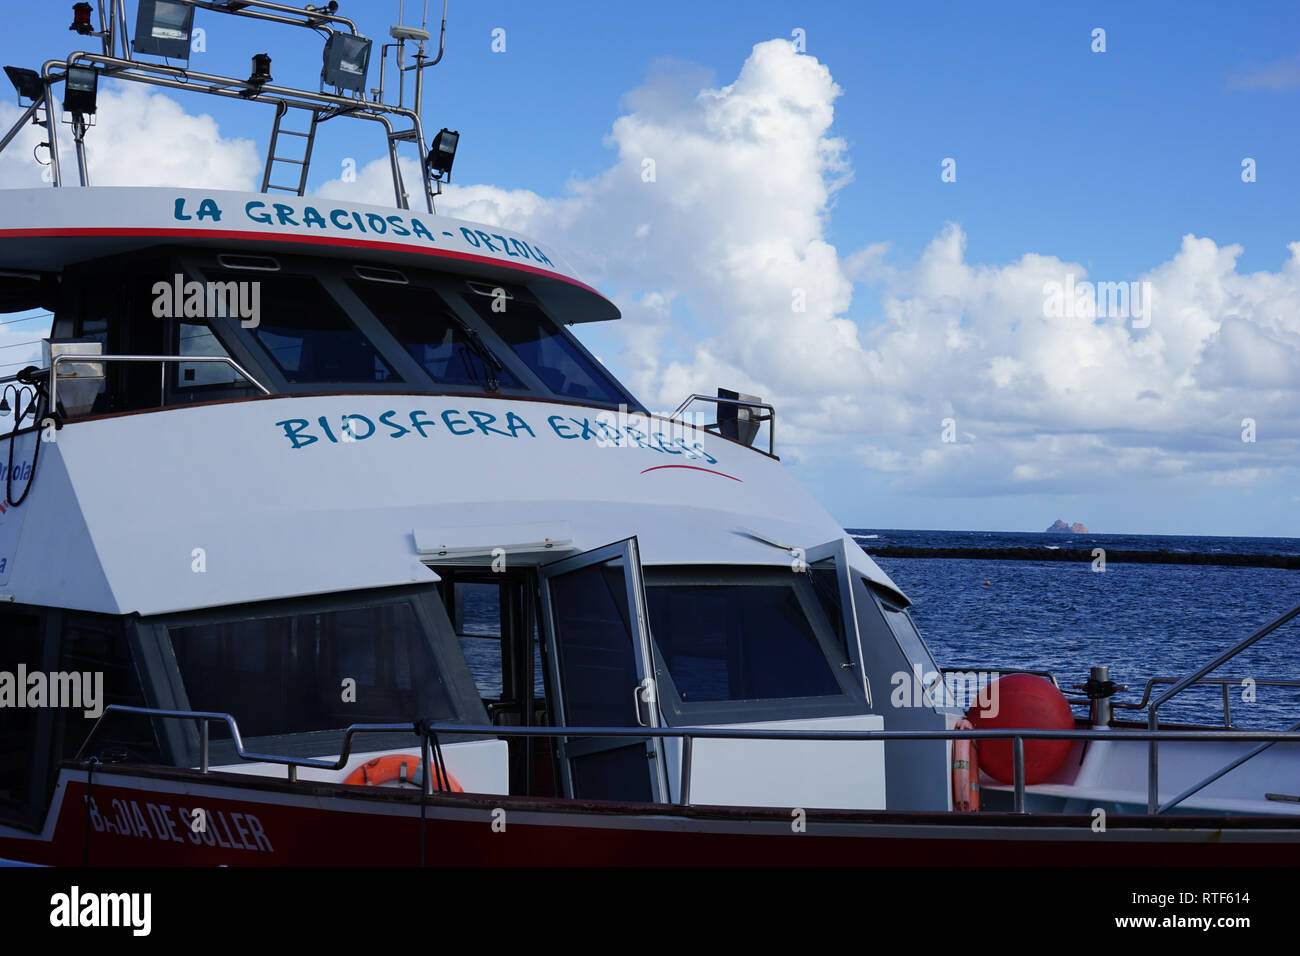 Biosfera Express, Personen-Fähre nach La Graciosa, Hafen von Orzola, Lanzarote, Kanarische isole Foto Stock